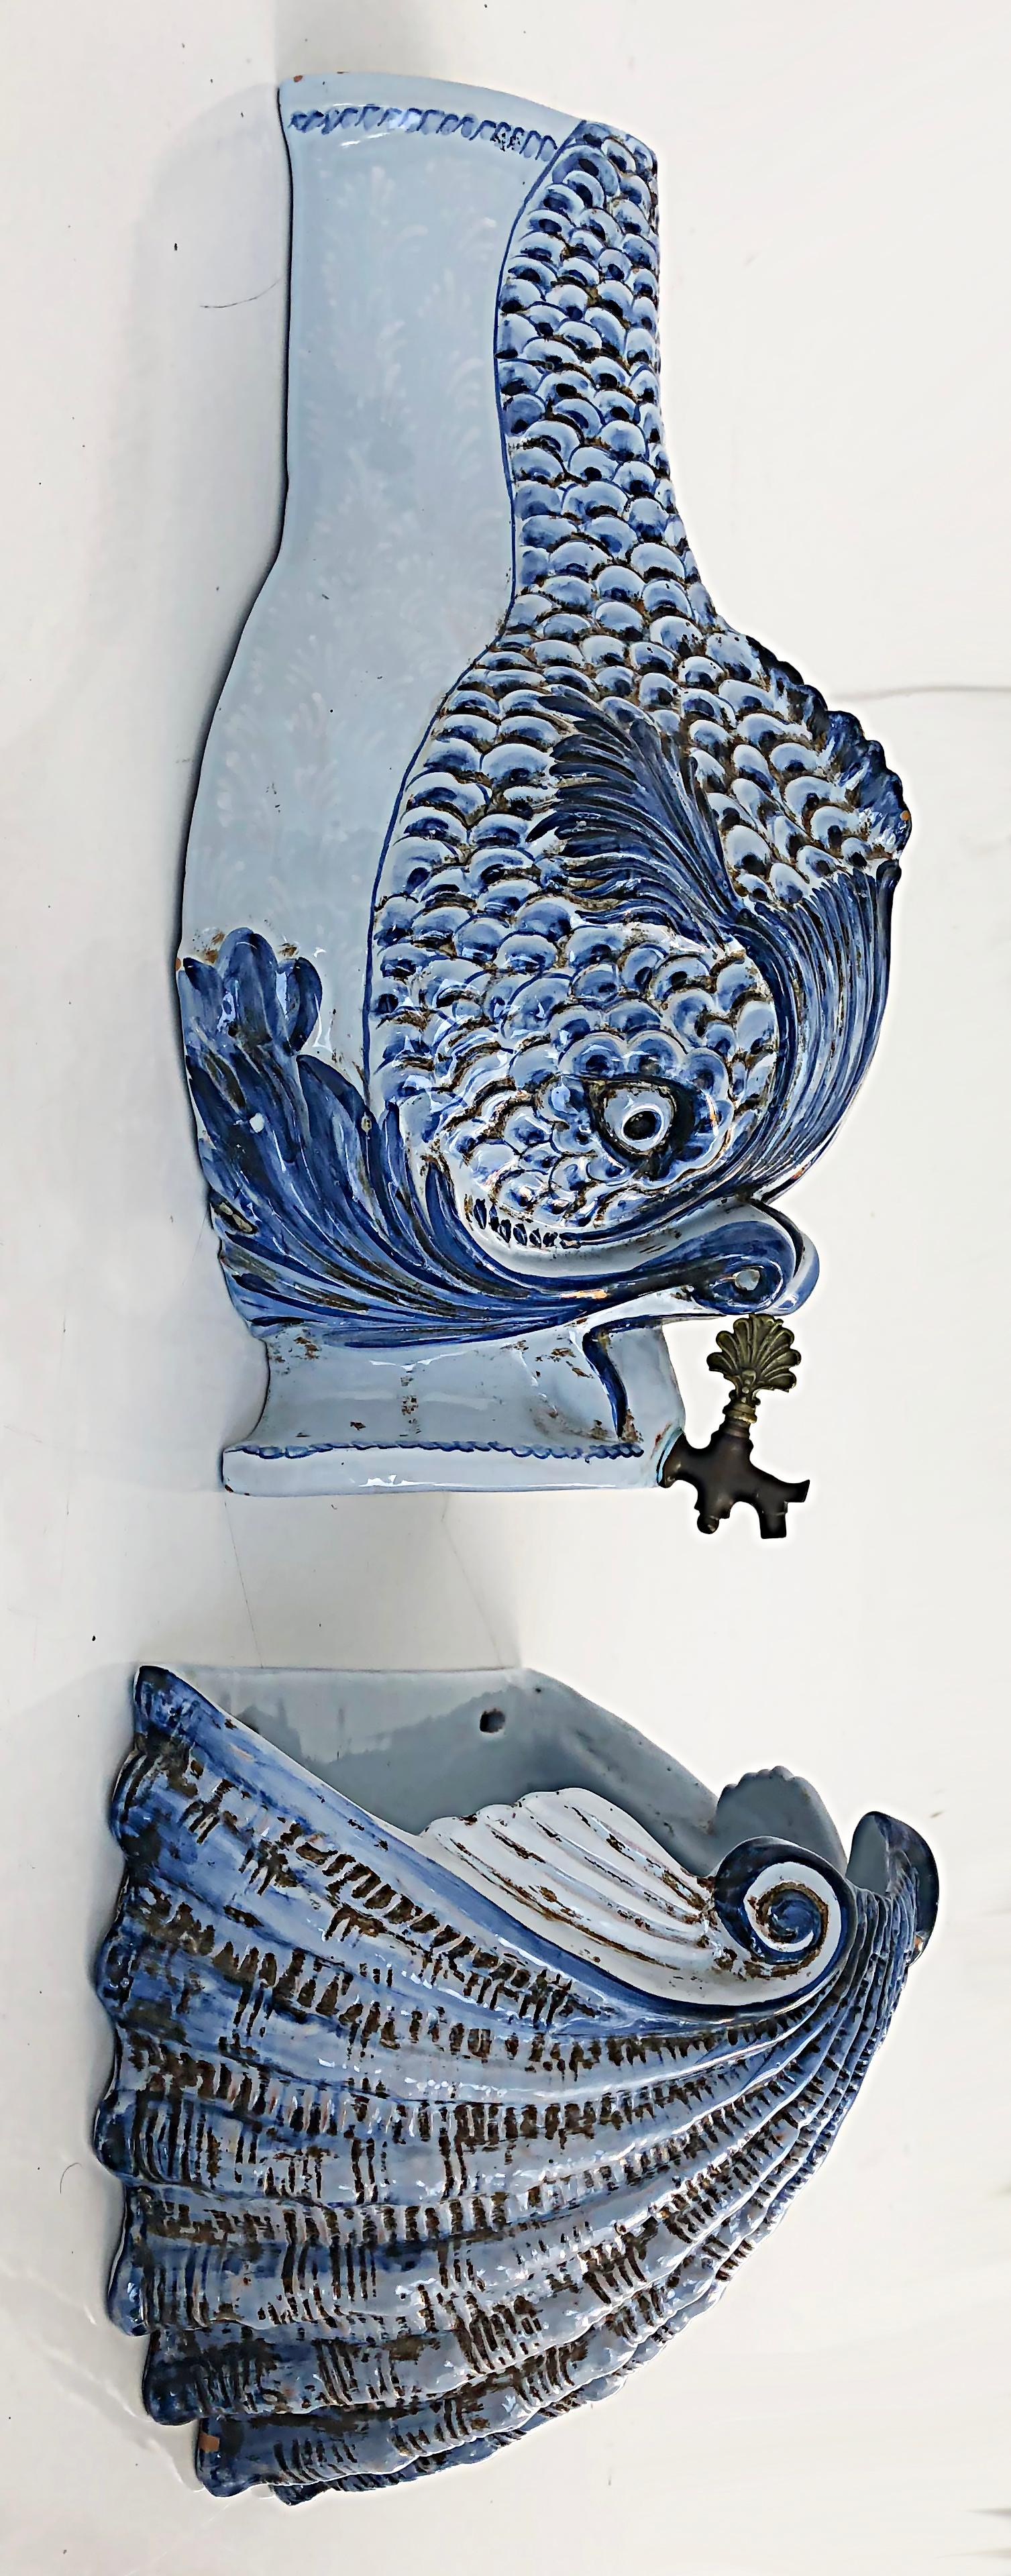 20th Century Italian Glazed Ceramic Dolphin Wall Fountain Lavabo with Shell